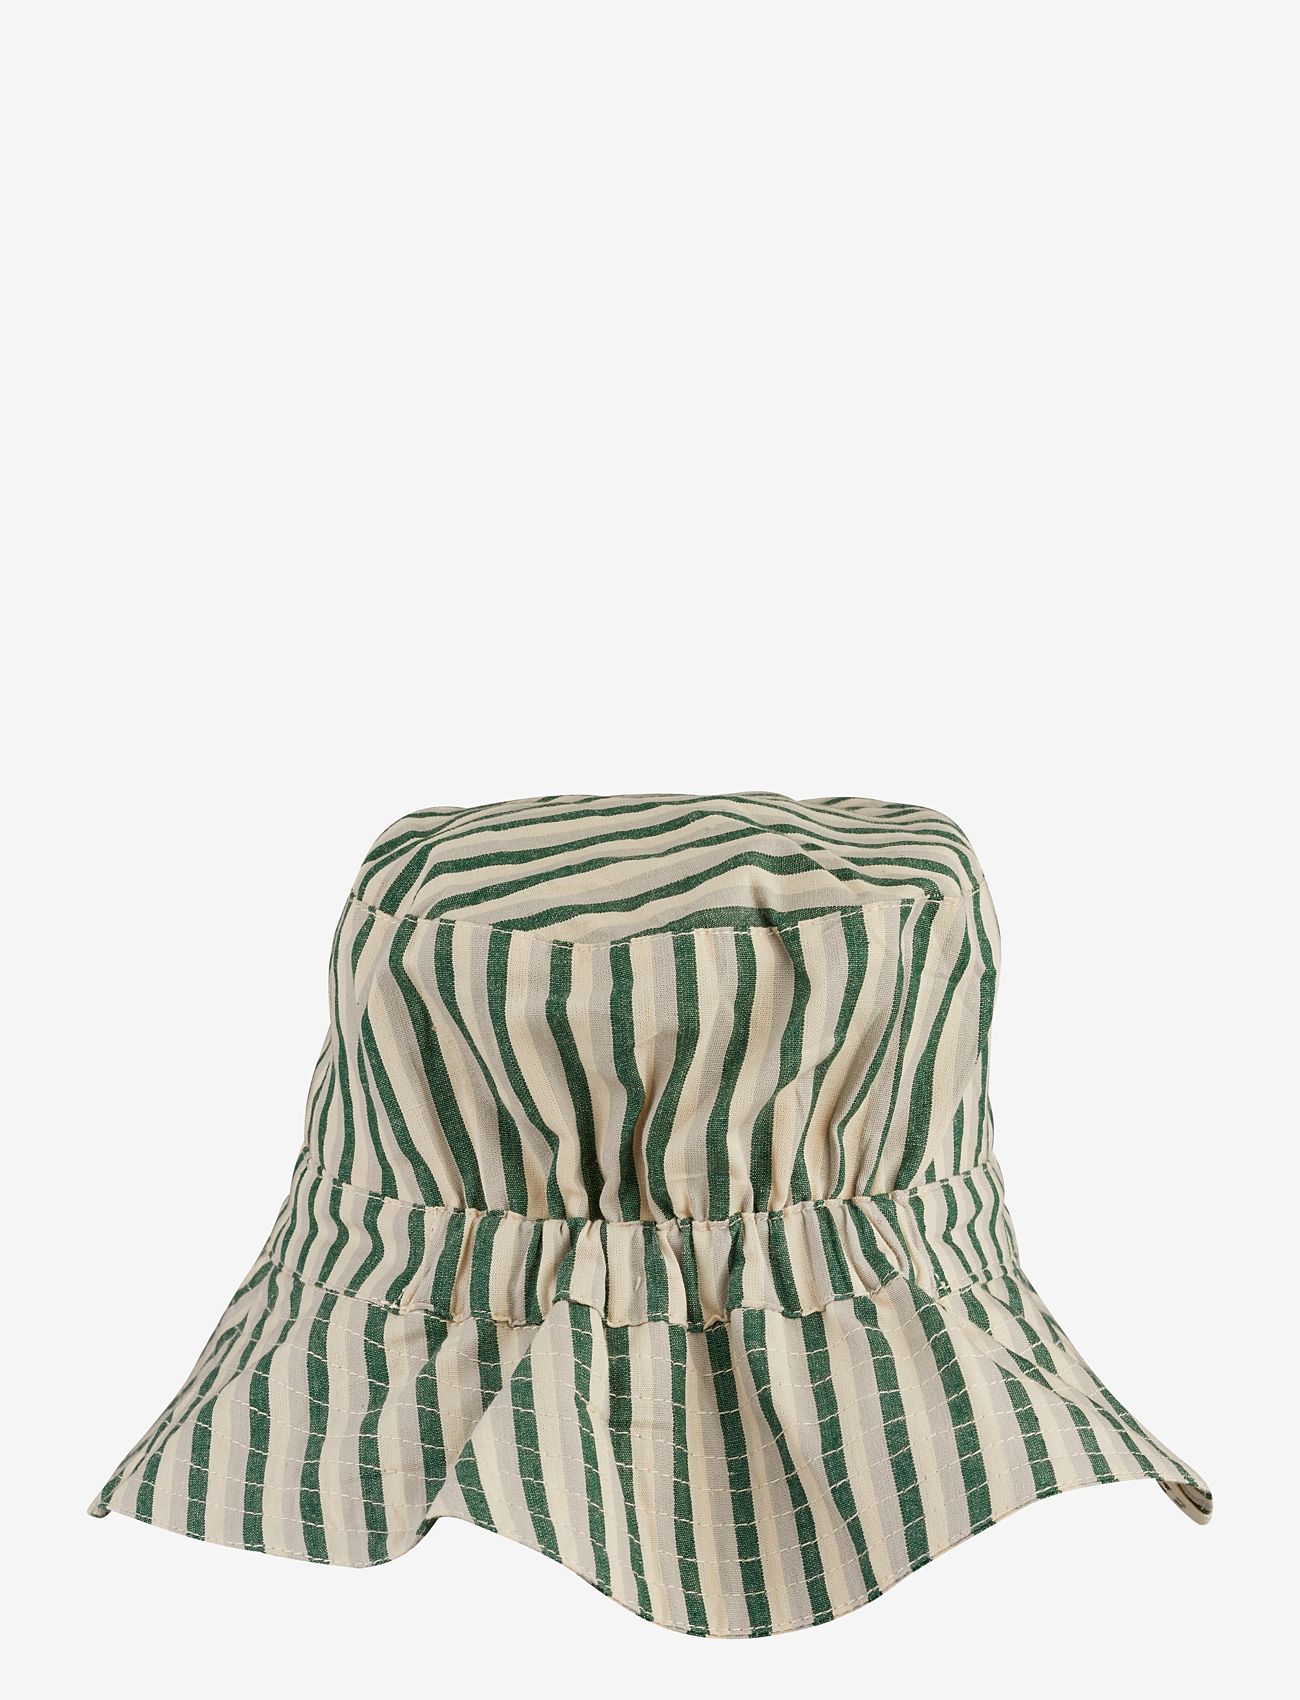 Liewood - Sander bucket hat - kapelusze - y/d stripe garden green / sandy / dove blue - 1